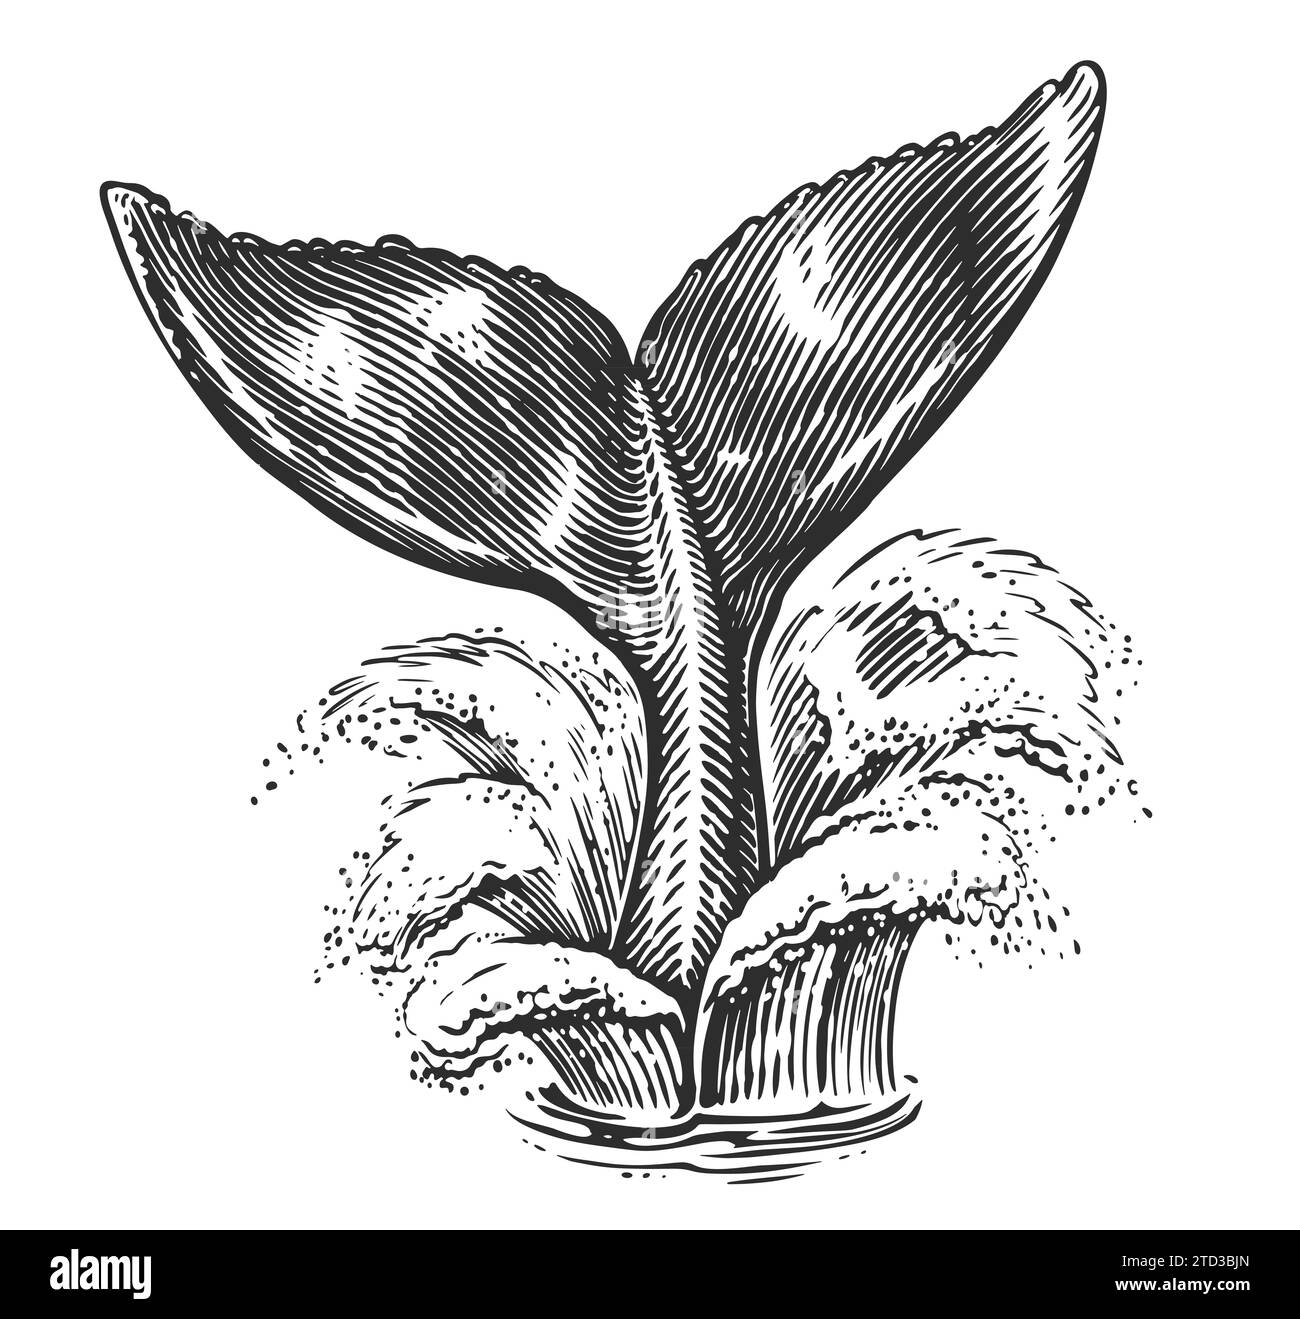 Queue de baleine au-dessus de l'eau de mer. Poisson ou sirène, dessin illustration gravure style dessiné à la main Banque D'Images